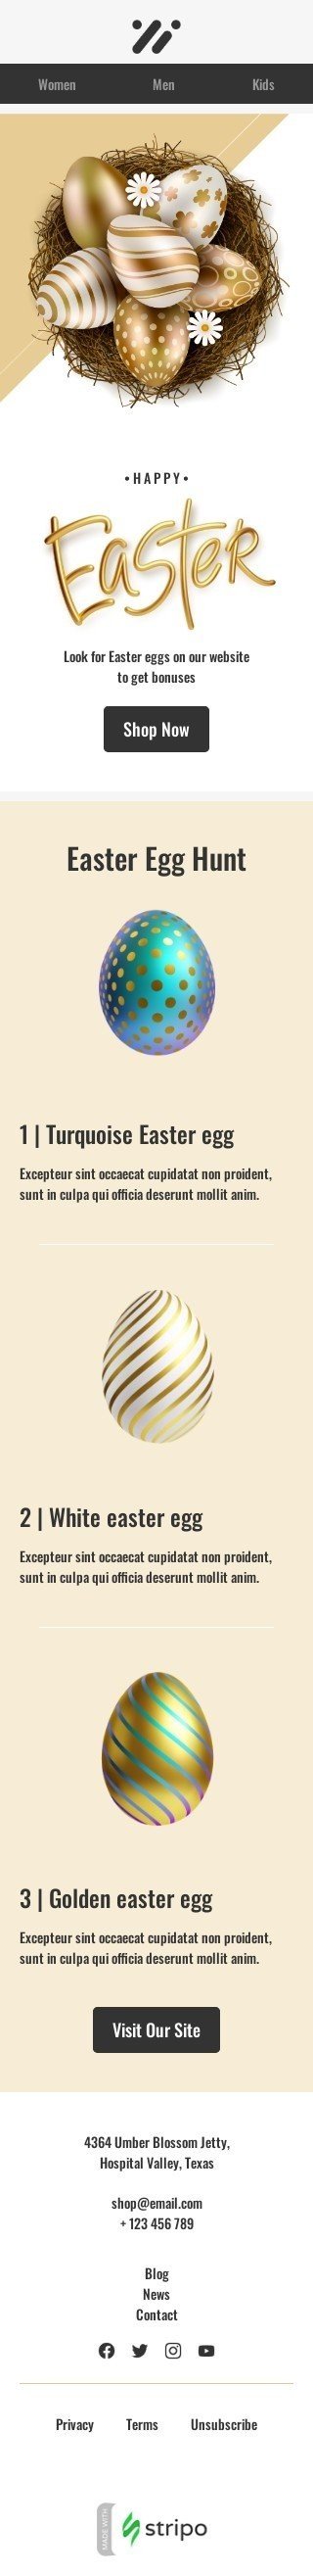 Шаблон письма к празднику Пасха «Охота за пасхальными яйцами» для индустрии «Мода» мобильный вид